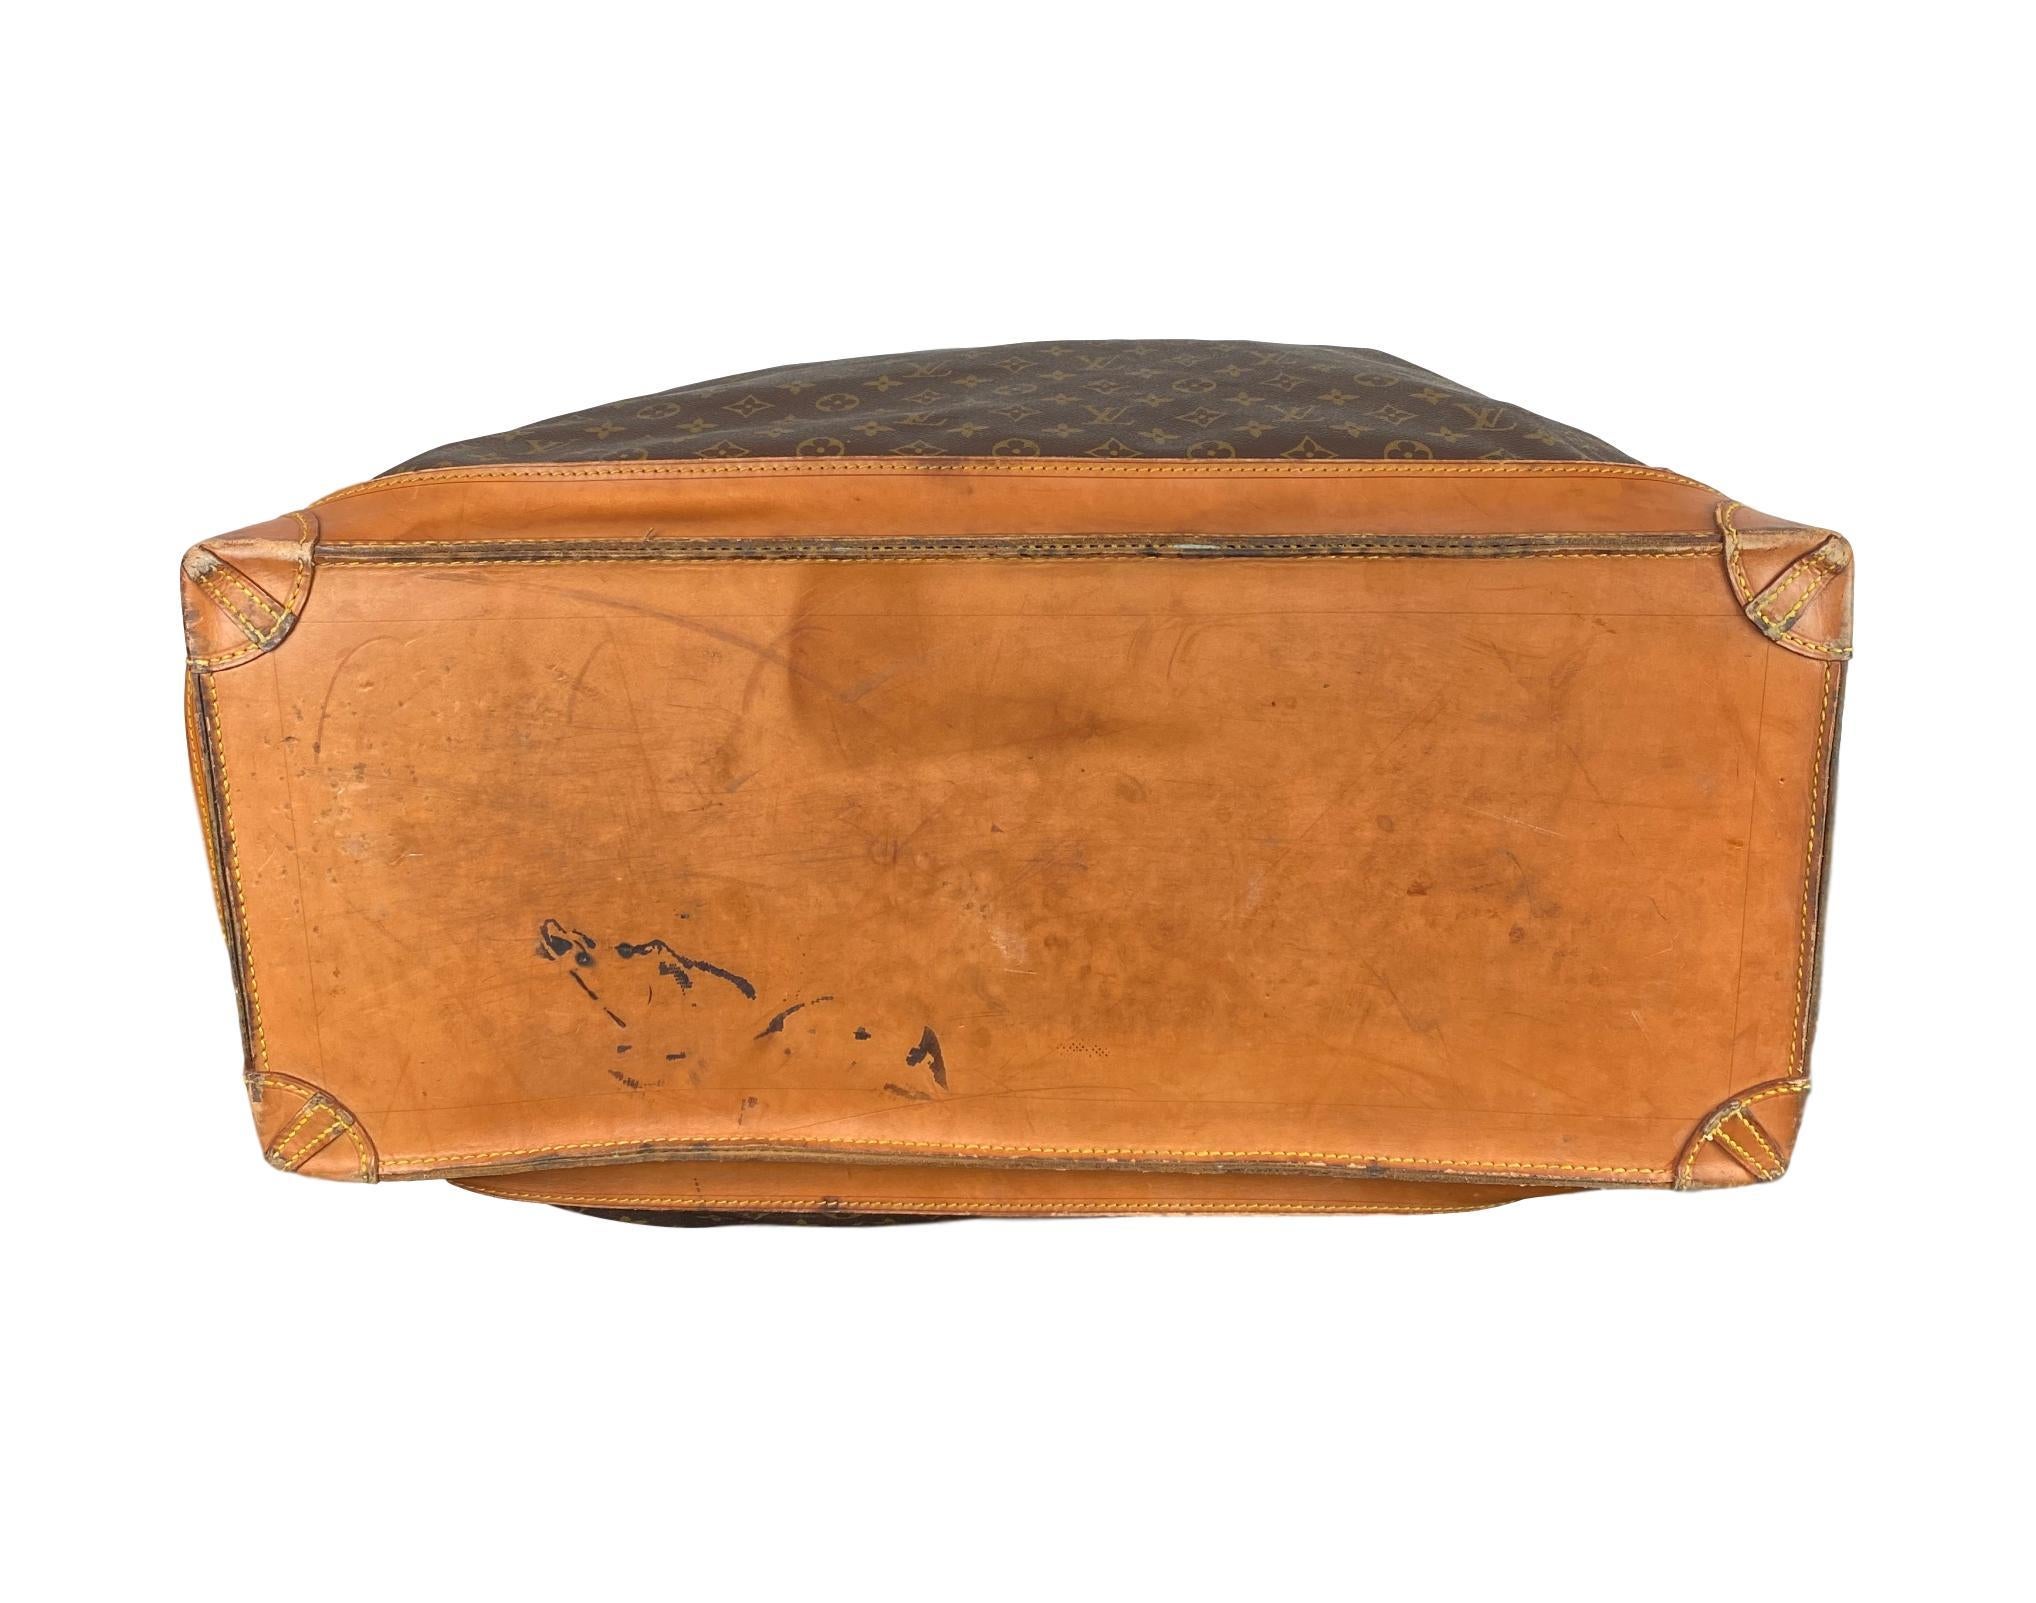  Louis Vuitton - Grand sac de voyage à vapeur Monogram 55 Unisexe 